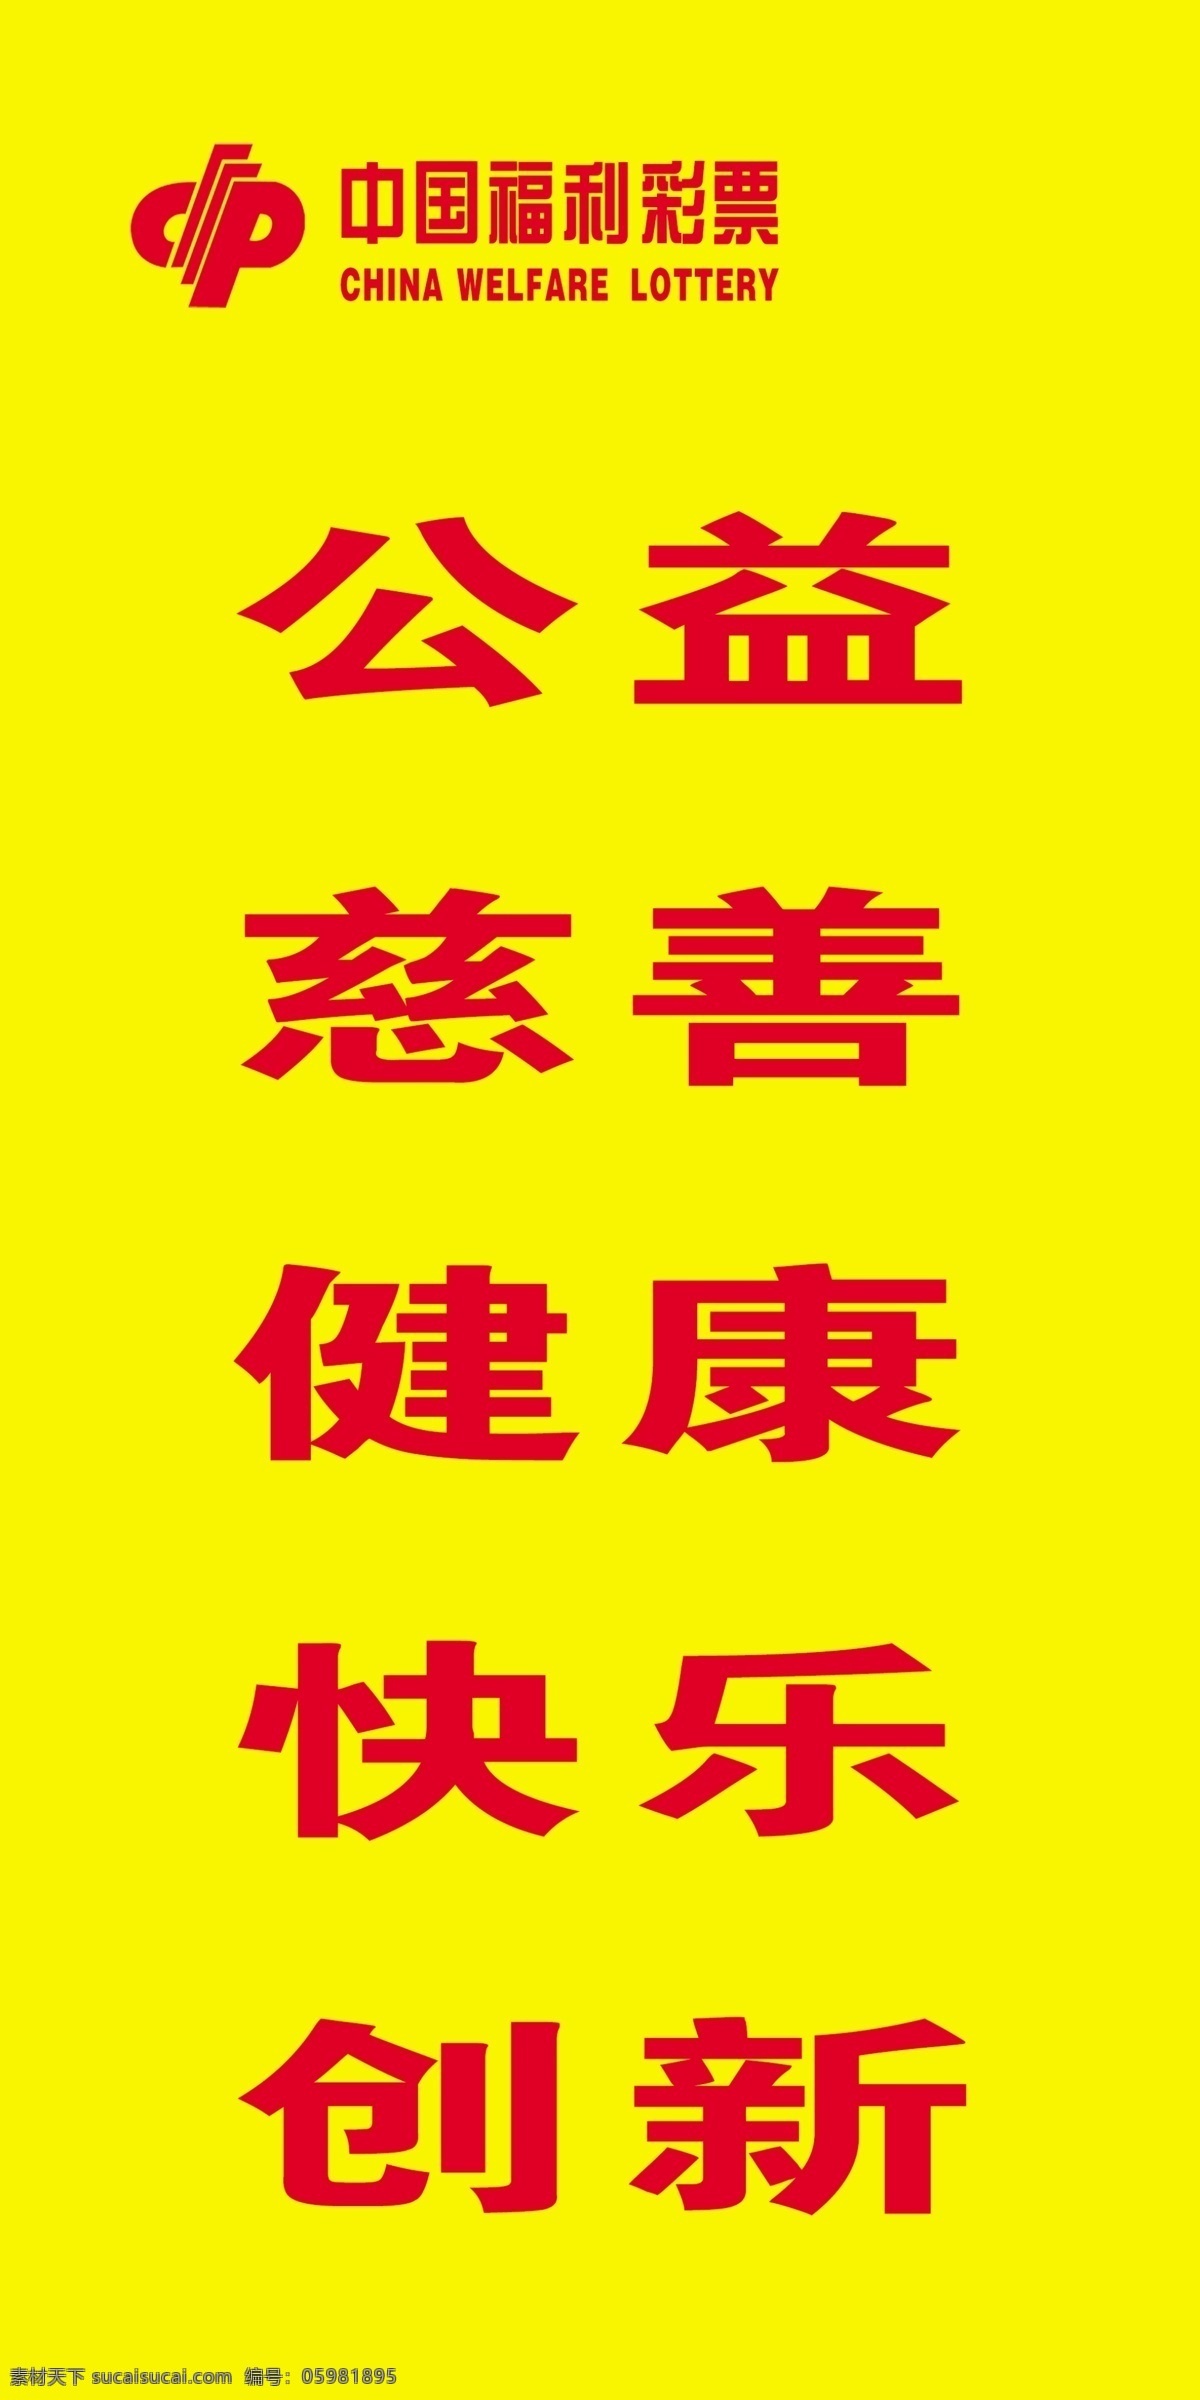 黄底公益 刀旗 福彩标志 文字 背景颜色 版面 室外广告设计